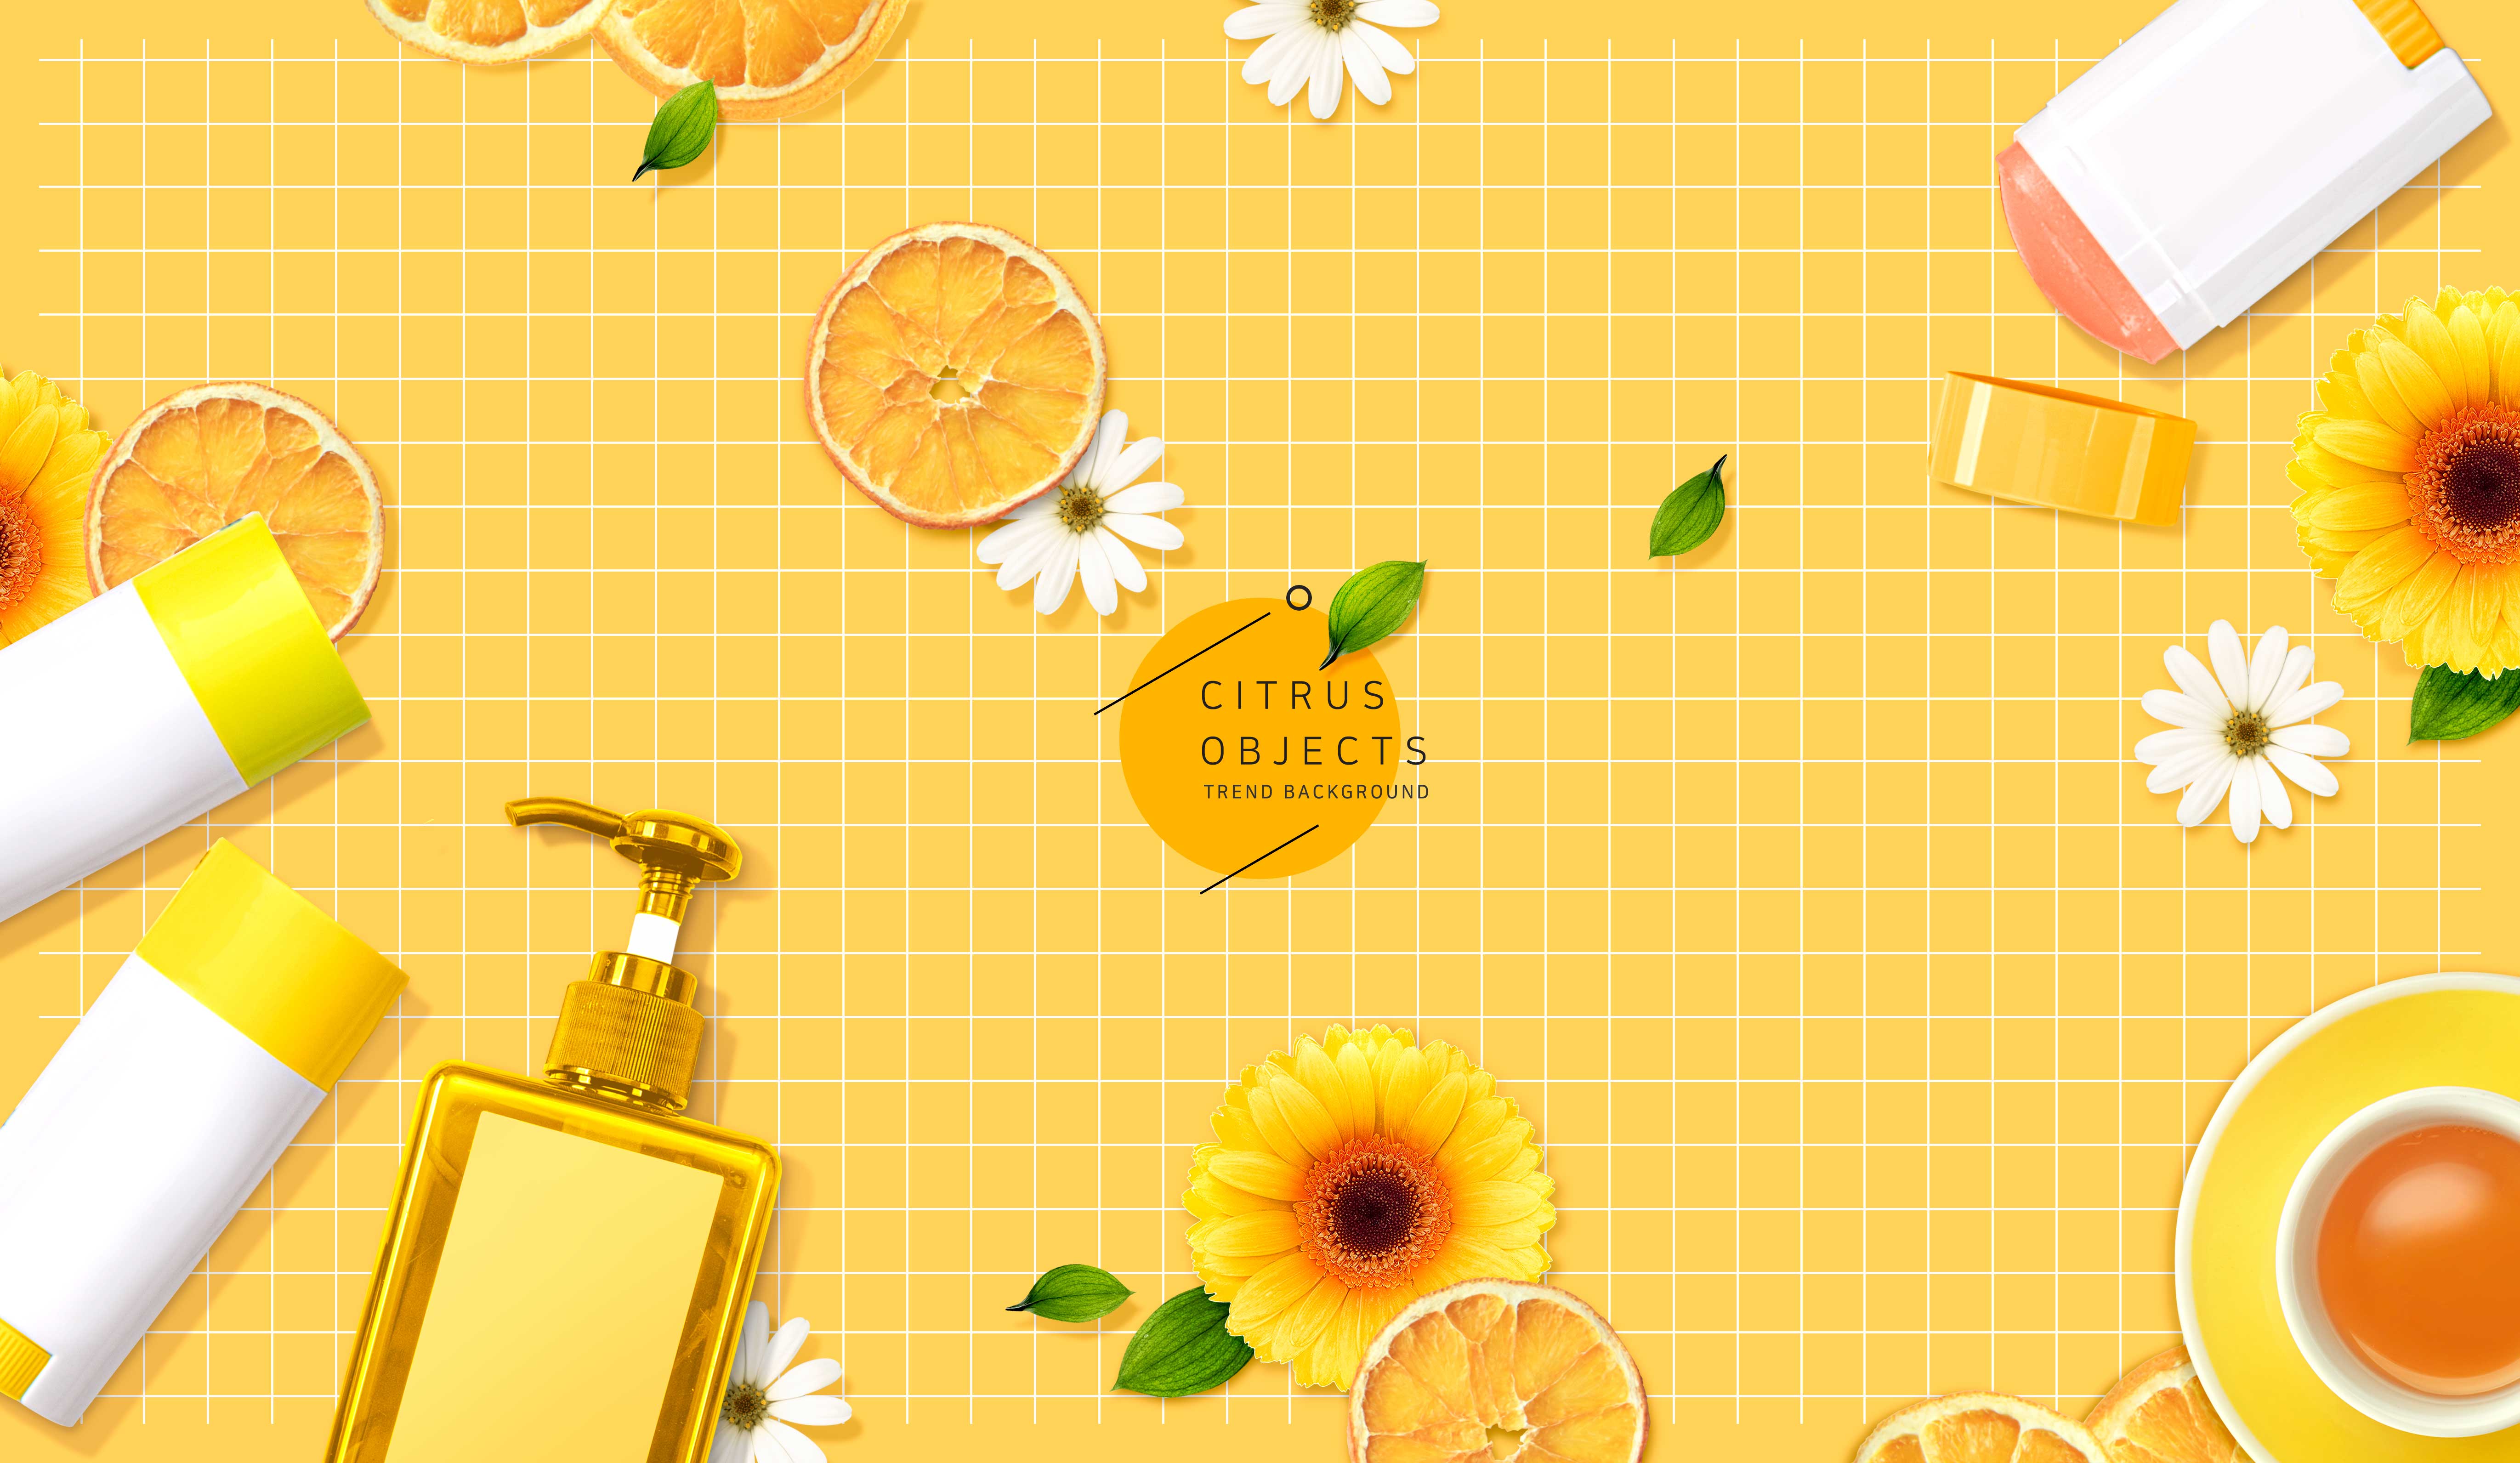 元素网格柑橘物品背景图形psd素材设计素材模板